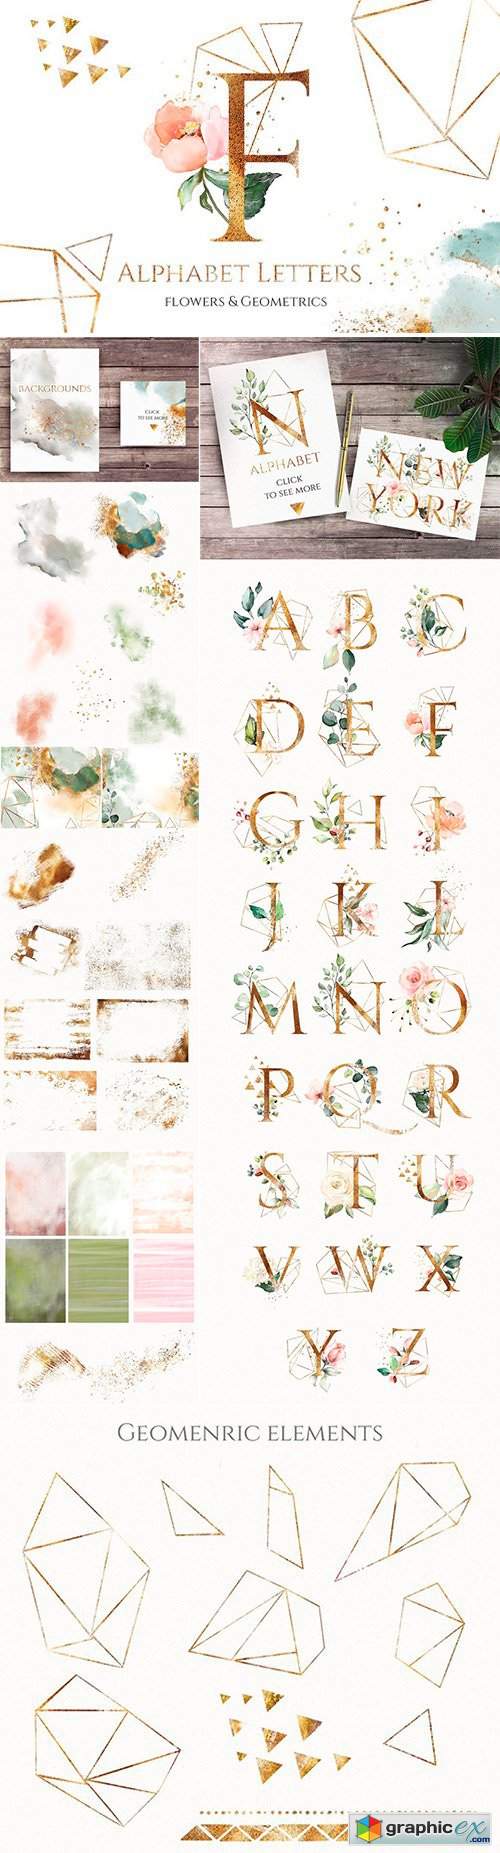 Floral alphabet letters. Geometrics